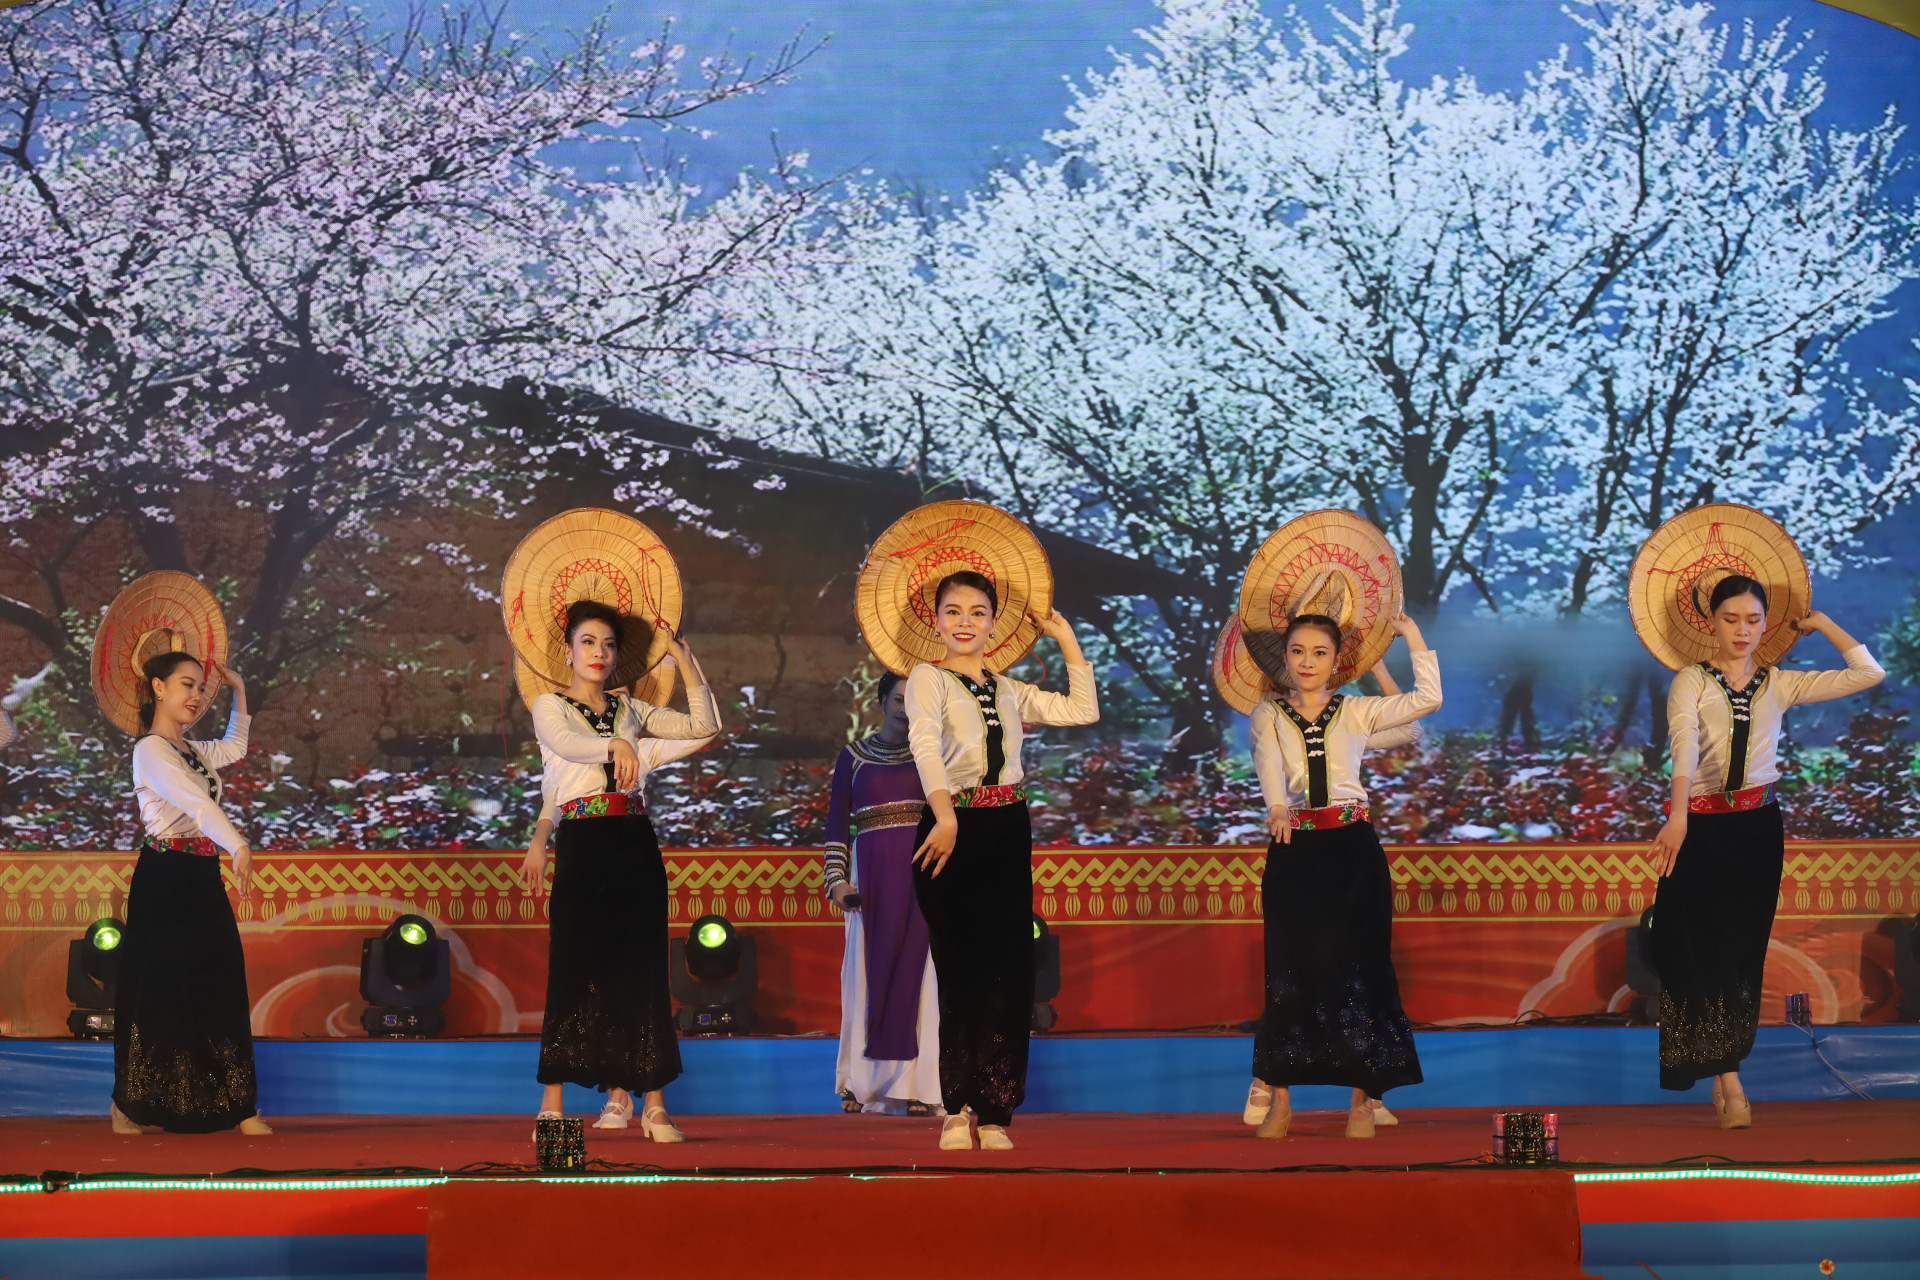 Hình ảnh những cô gái Thái uyển chuyển trong điệu múa được diễn viên, cộng tác viên của Đoàn ca múa nhạc Hải Đăng tái hiện.